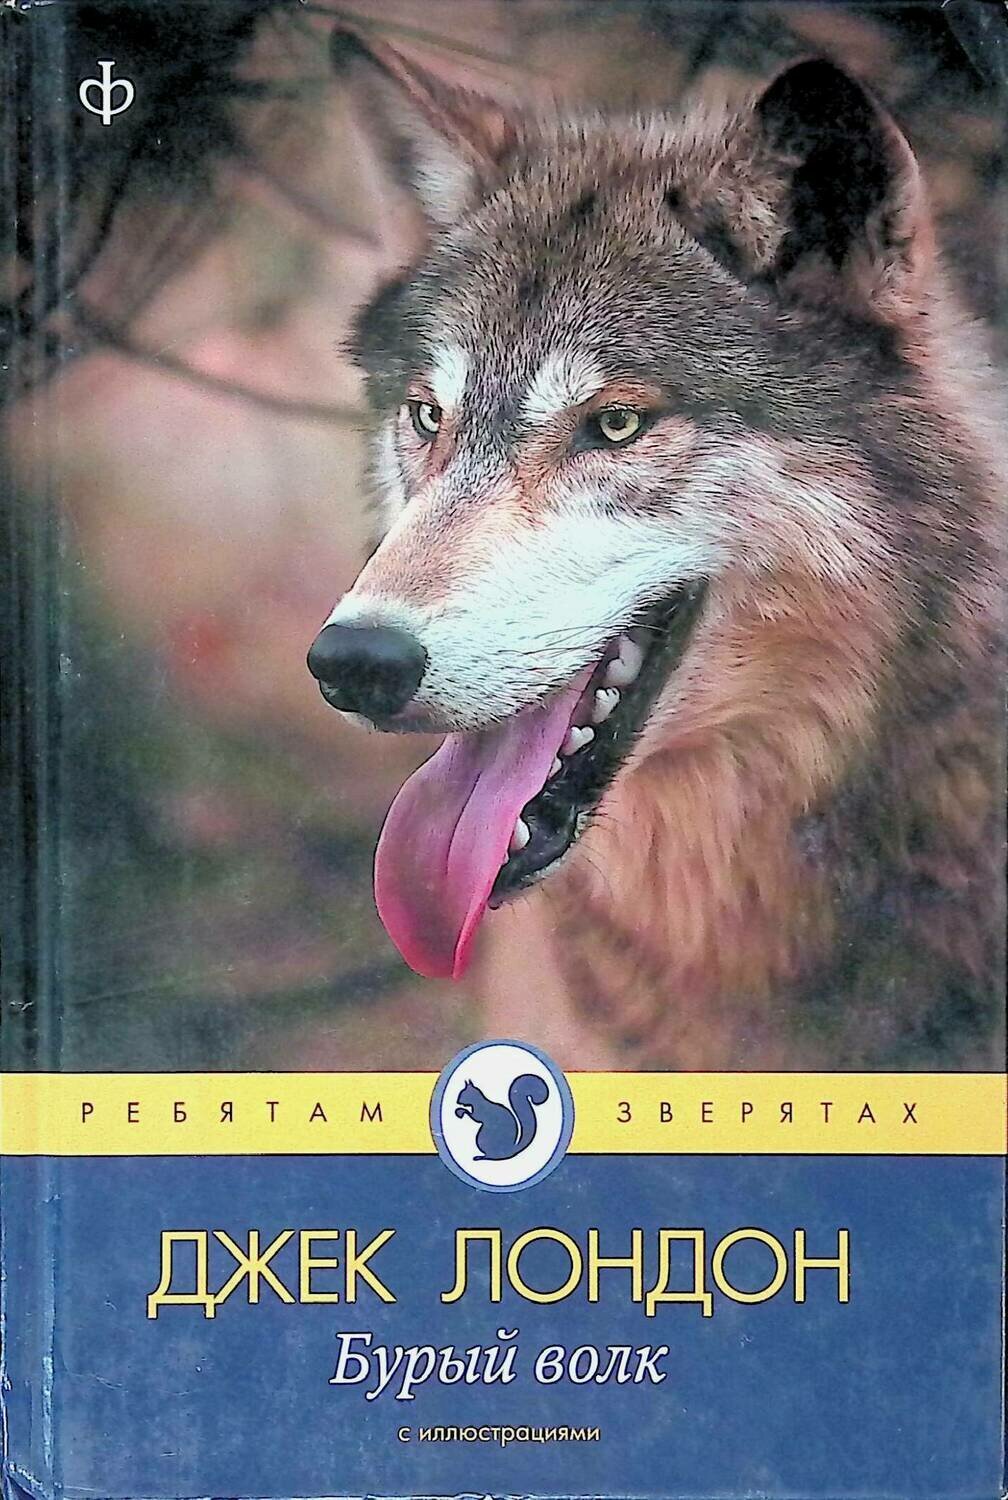 Произведение бурый волк. Бурый волк Джек Лондон книга. Дж Лондон бурый волк. Книга про волка Джек Лондон. Белый волк Джек Лондон книга.